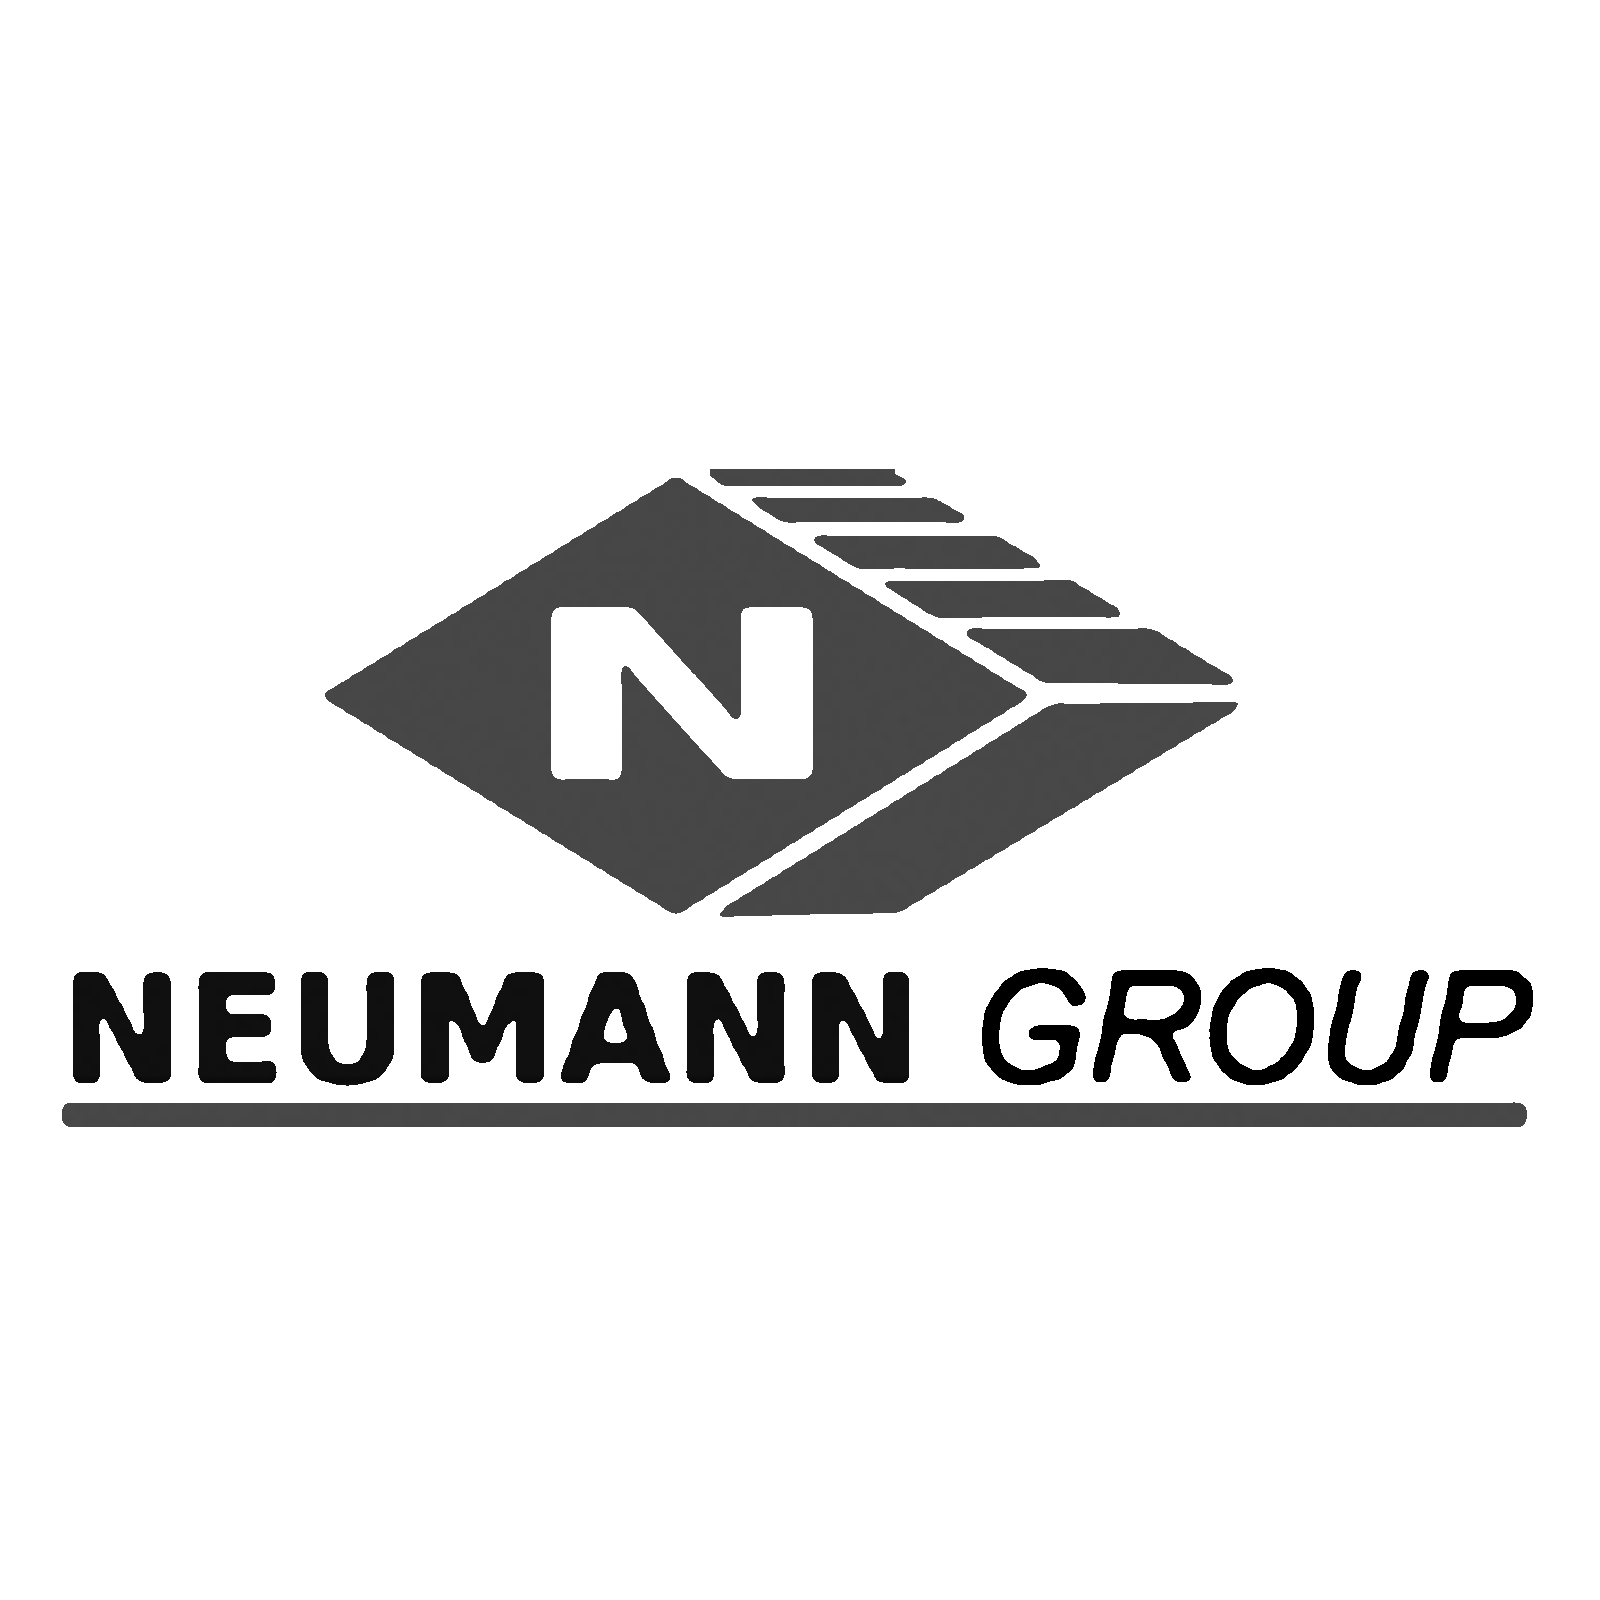 Neumann Group already using Macquarie Telecom SD-WAN